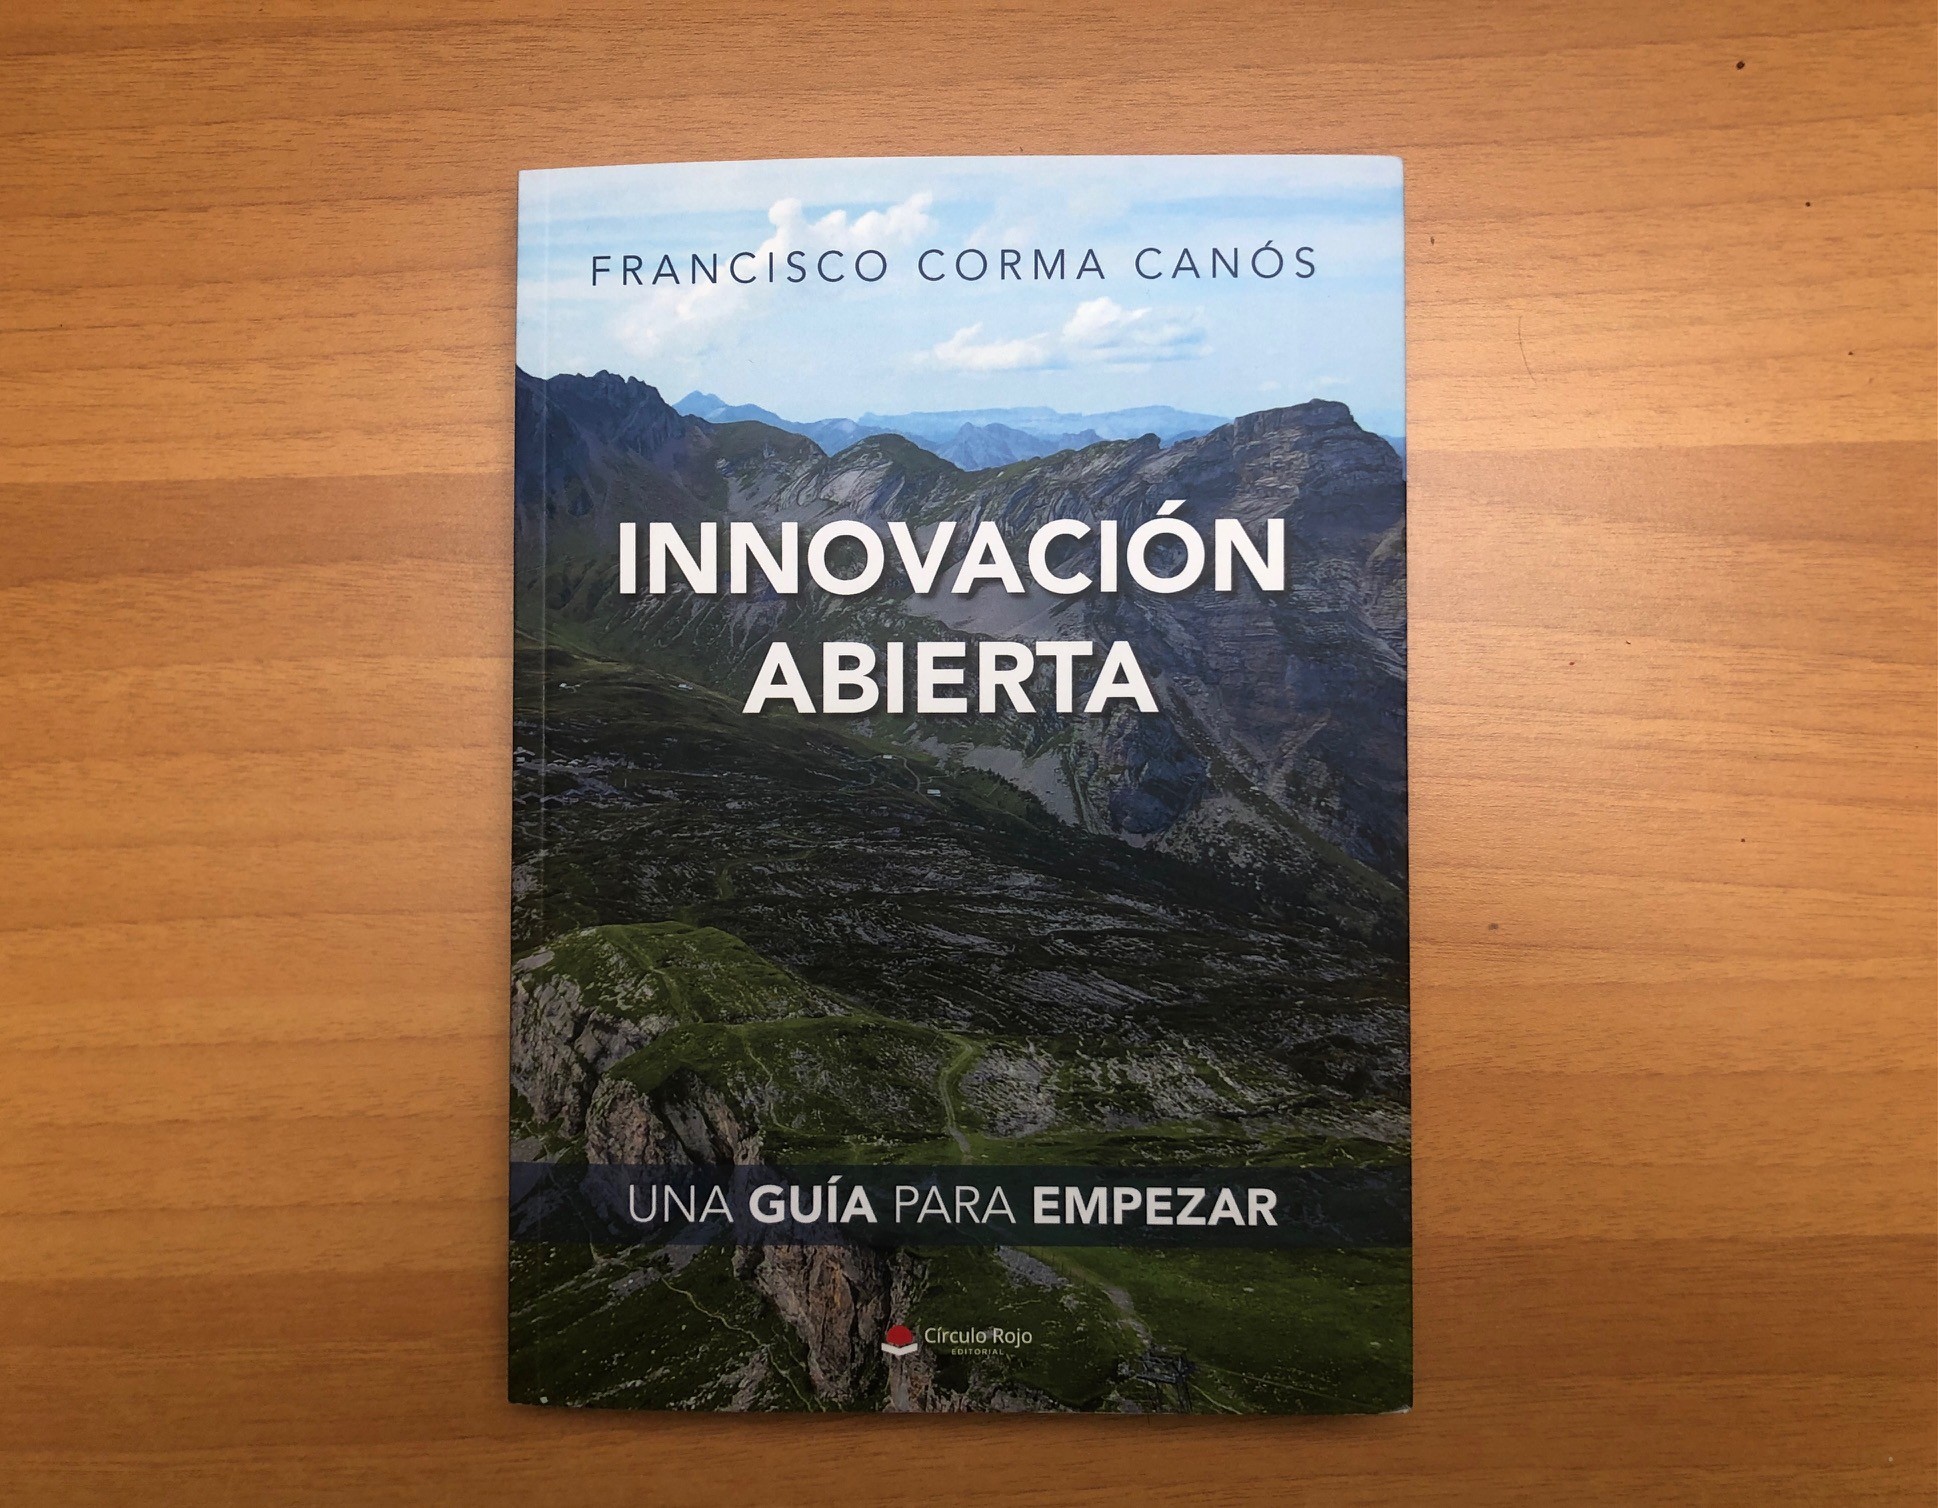 Francisco Corma Canós "Innovación abierta"